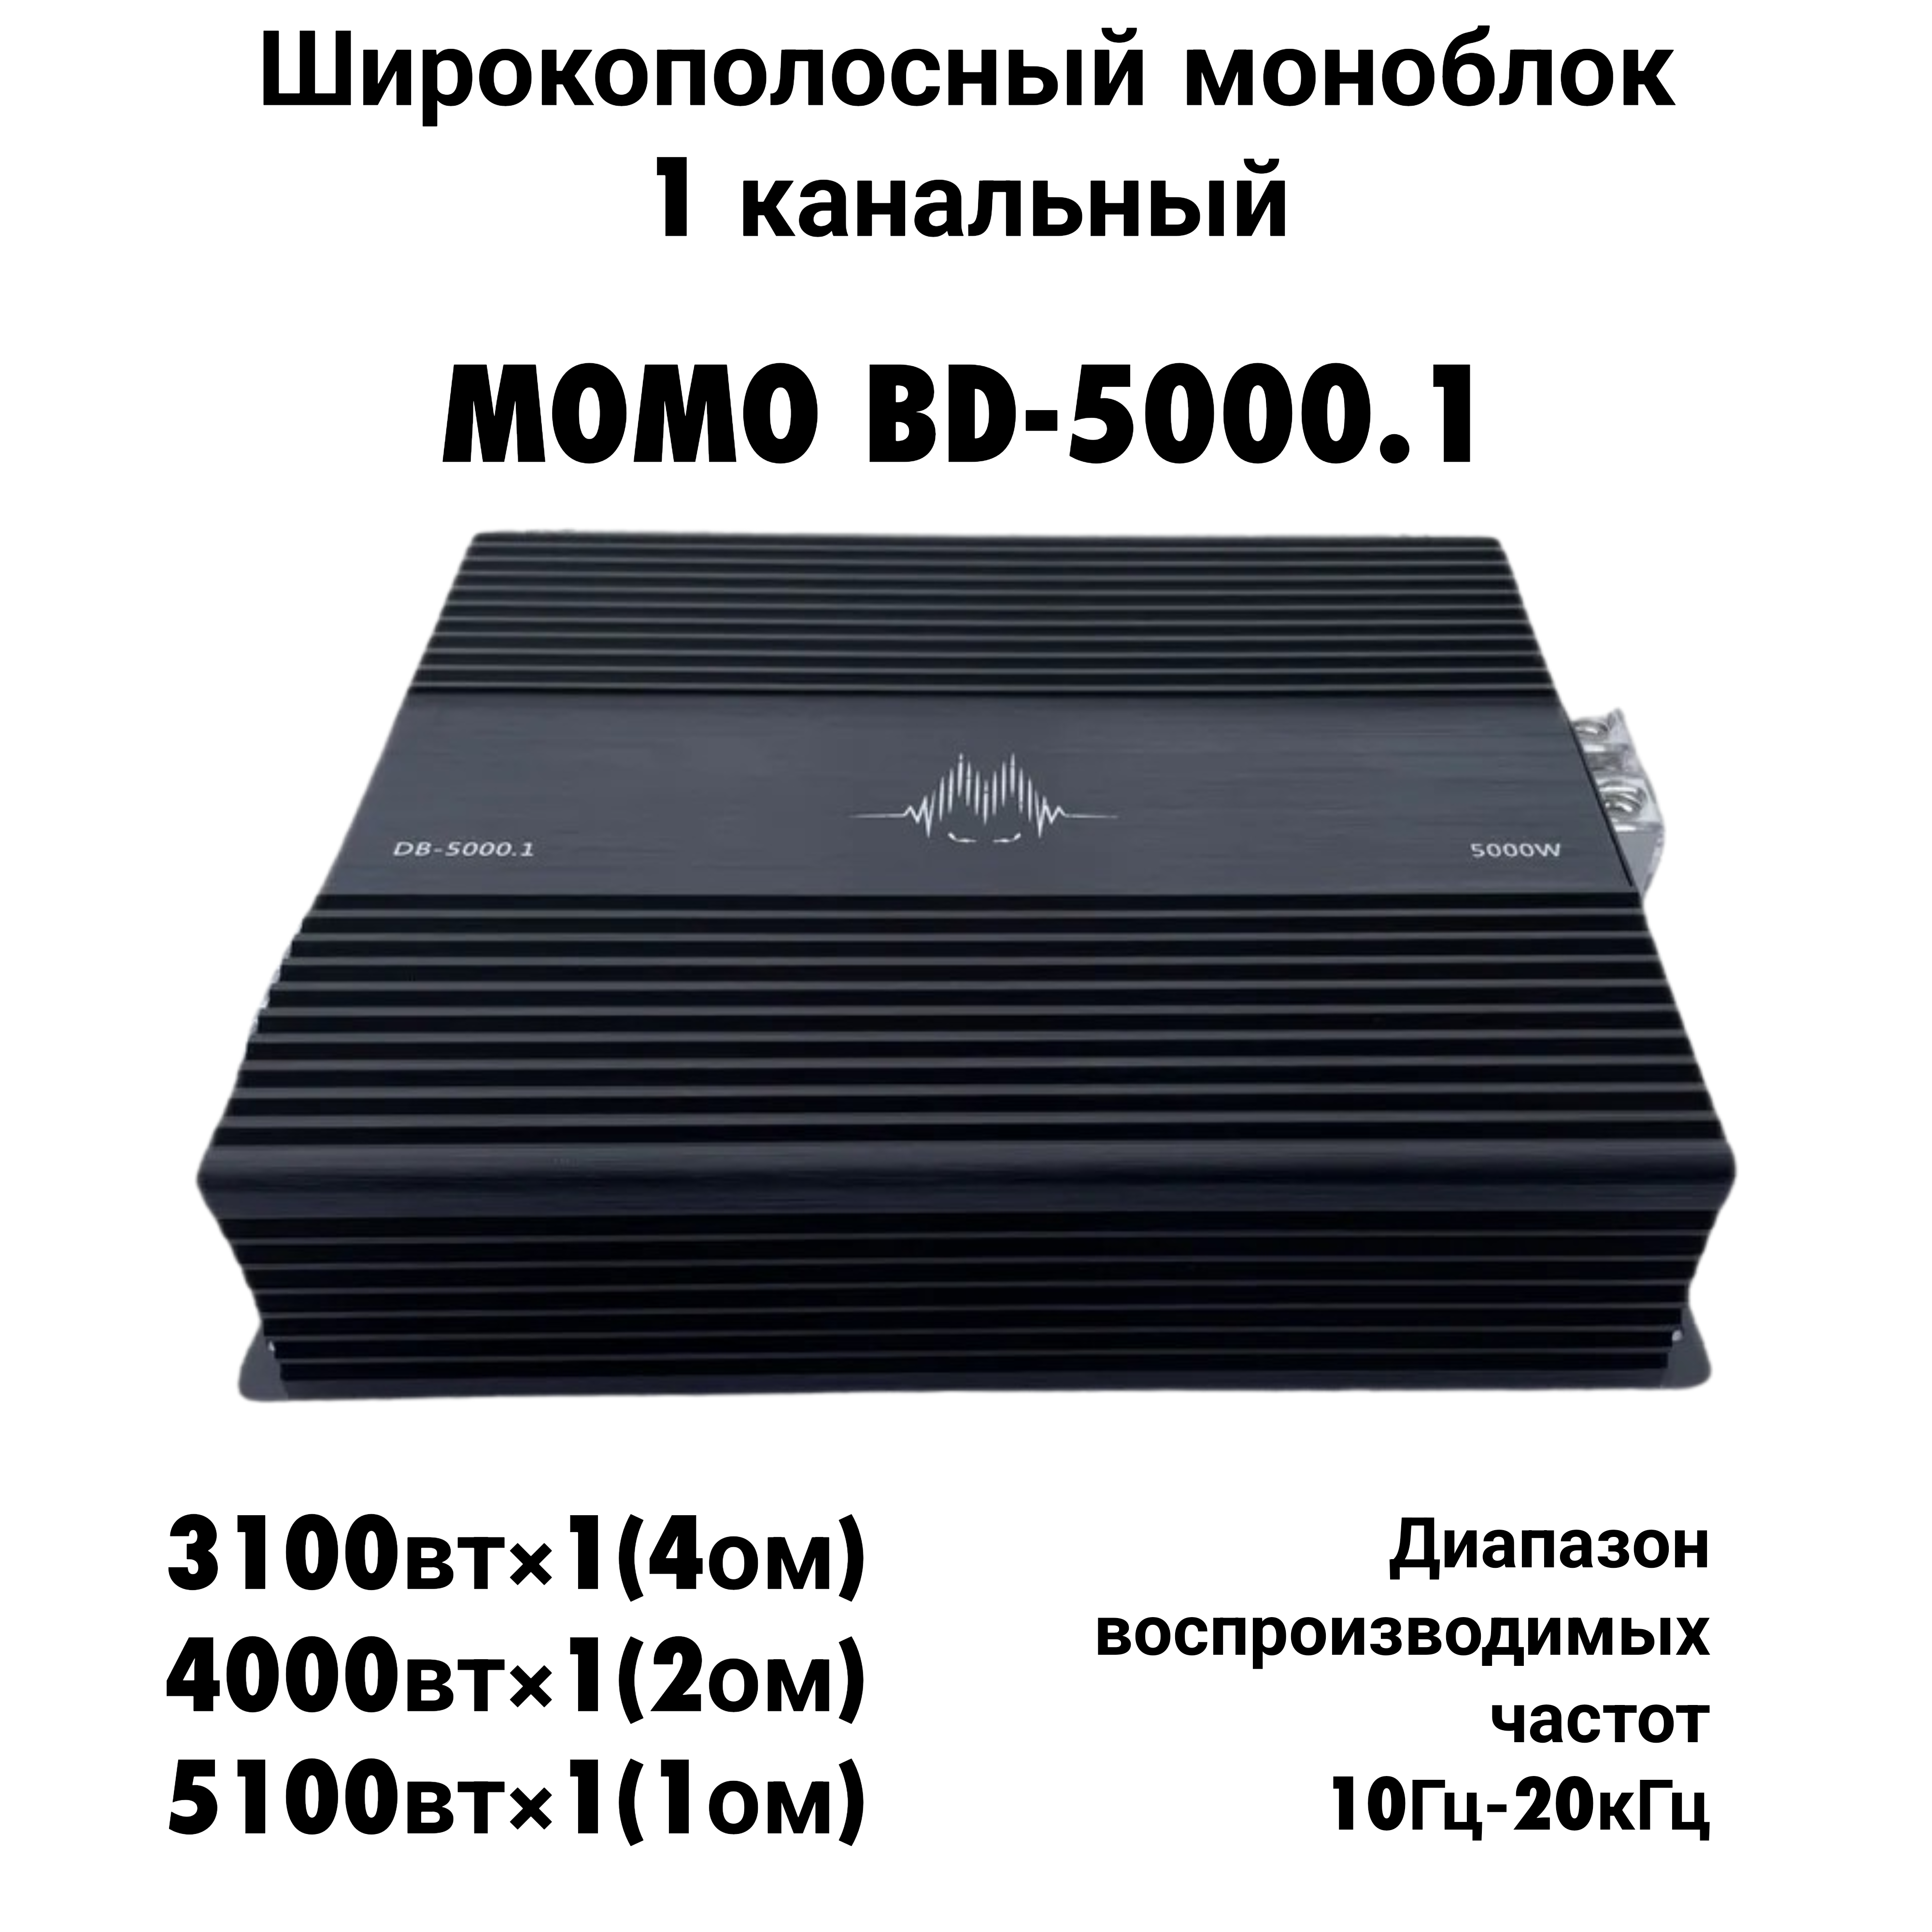 Автомобильный усилитель MOMO BD-5000.1